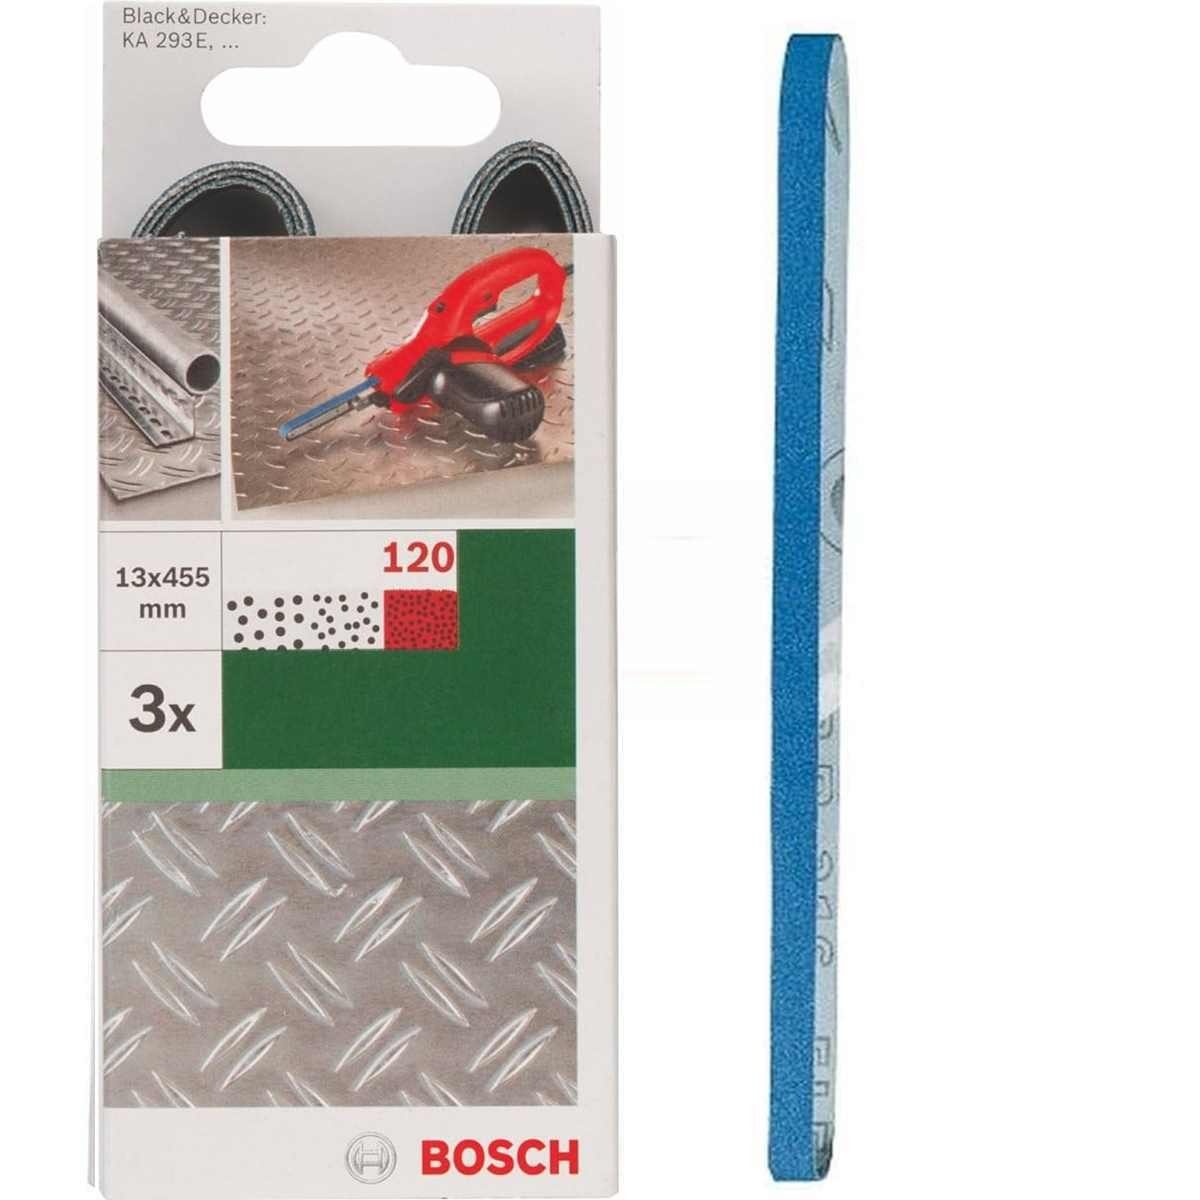 BOSCH Bohrfutter Bosch 3 Schleifbänder für B+D Powerfile KA 293E 13 x 451 mm, K 120